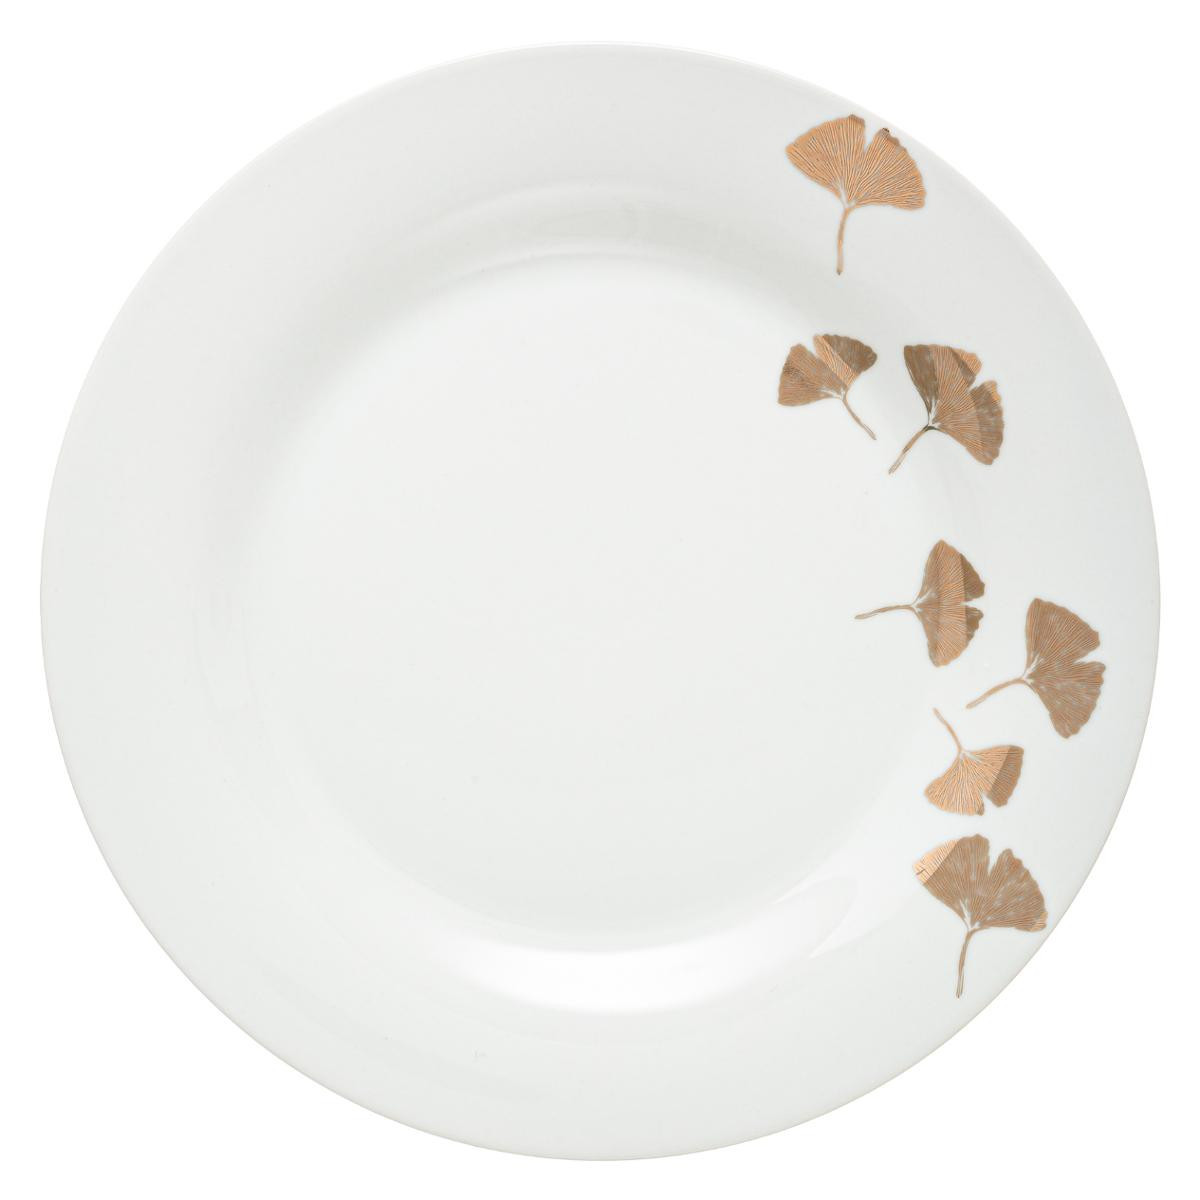 https://www.decomania.fr/706210-product_hd/lot-de-6-assiettes-plates-en-porcelaine-d-27-cm-decor-gingko-or.jpg